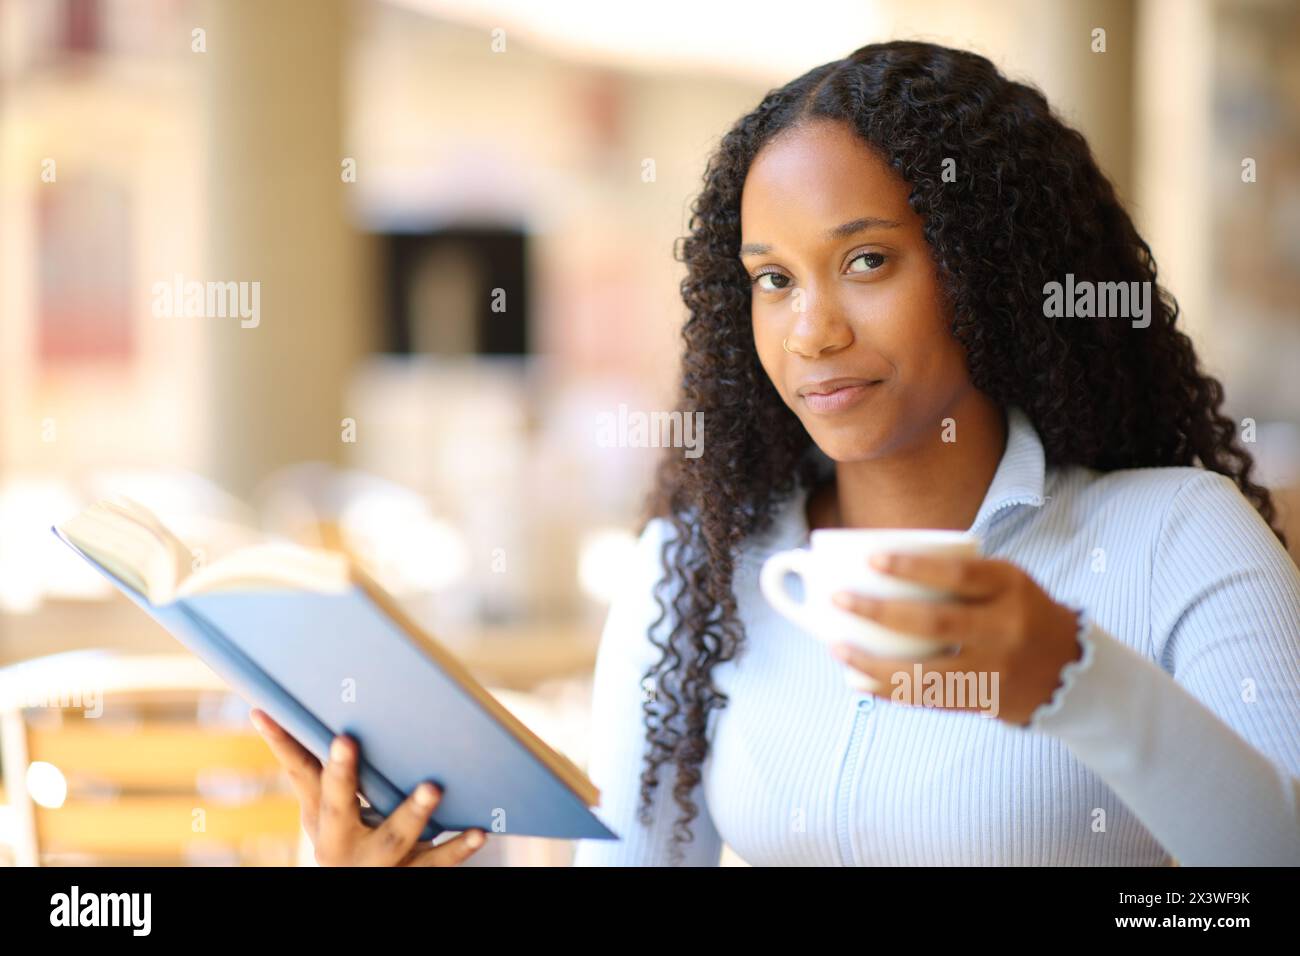 Glückliche schwarze Frau mit Papierbuch und Kaffeetasse, die Sie auf einer Restaurantterrasse ansieht Stockfoto